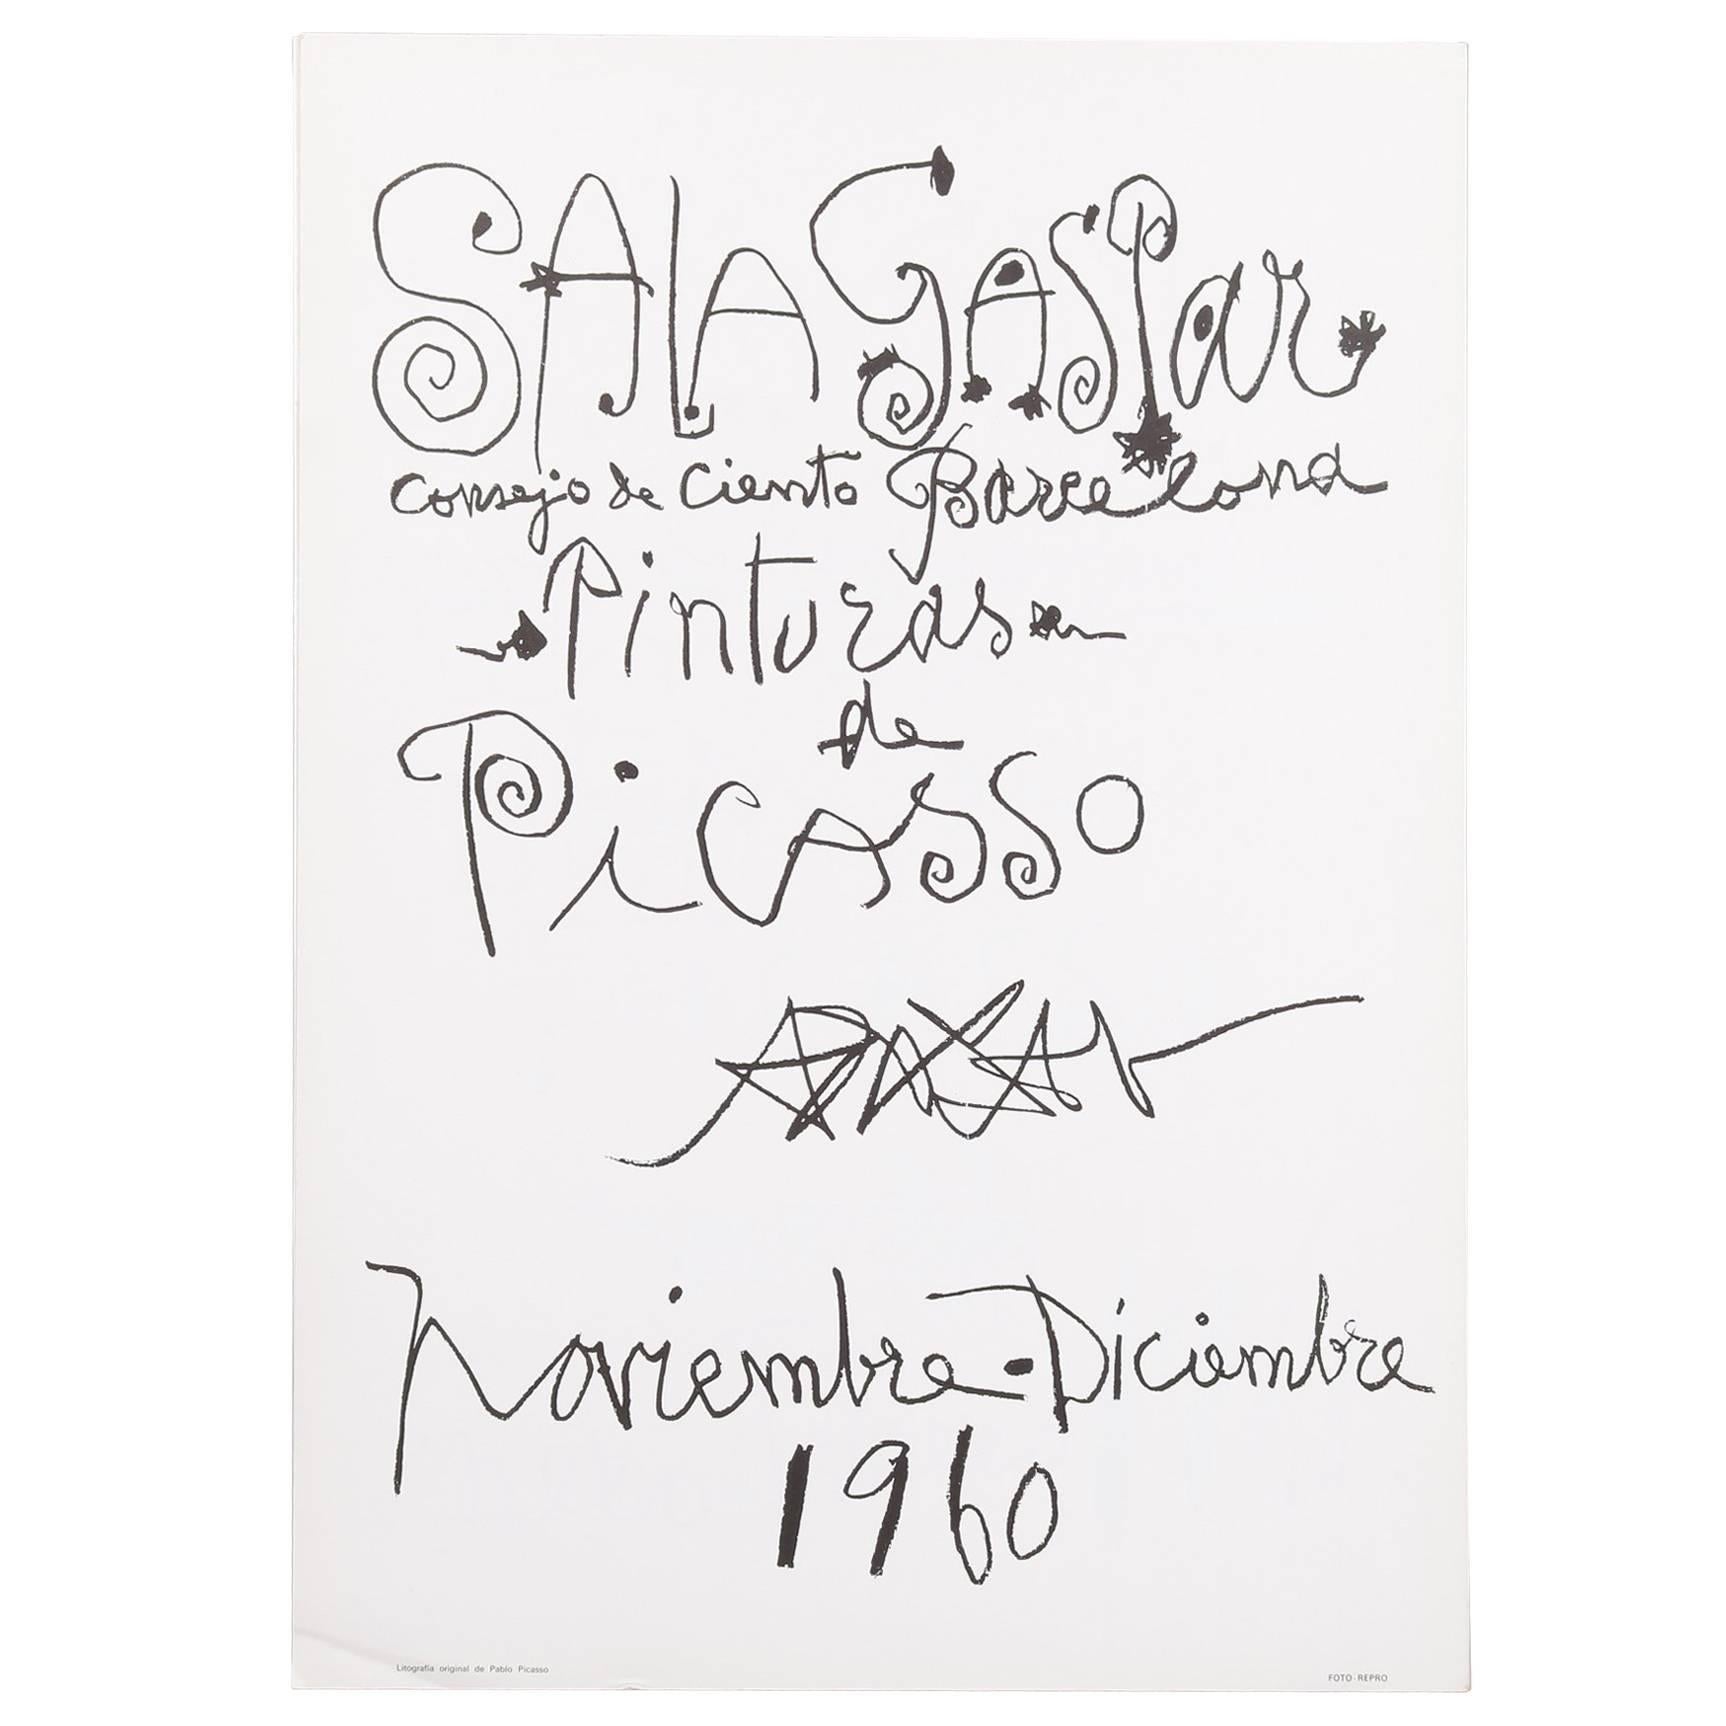 Original-Lithografie-Plakat von Pablo Picasso, 1960.
Katalog raisonne: Czwiklitzer 40; Reusse 767

Dieses Plakat in limitierter Auflage wurde für eine Ausstellung in der Sala Gaspar Gallery in Barcelona angefertigt. Es hat den einzigartigen,